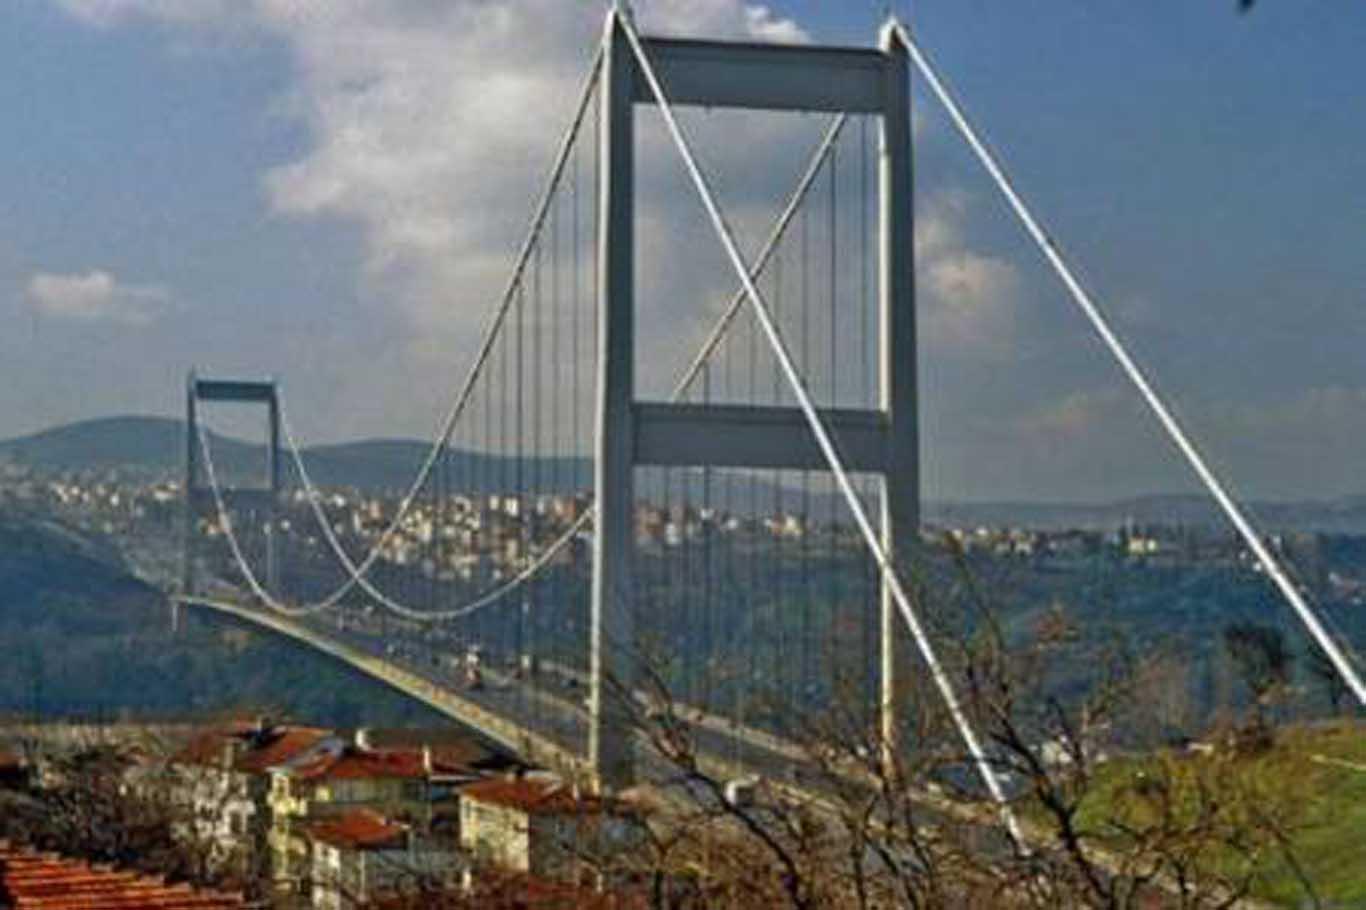 İstanbul Boğaziçi Köprüsü'nün adı '15 Temmuz Şehitler Köprüsü' olarak değişti